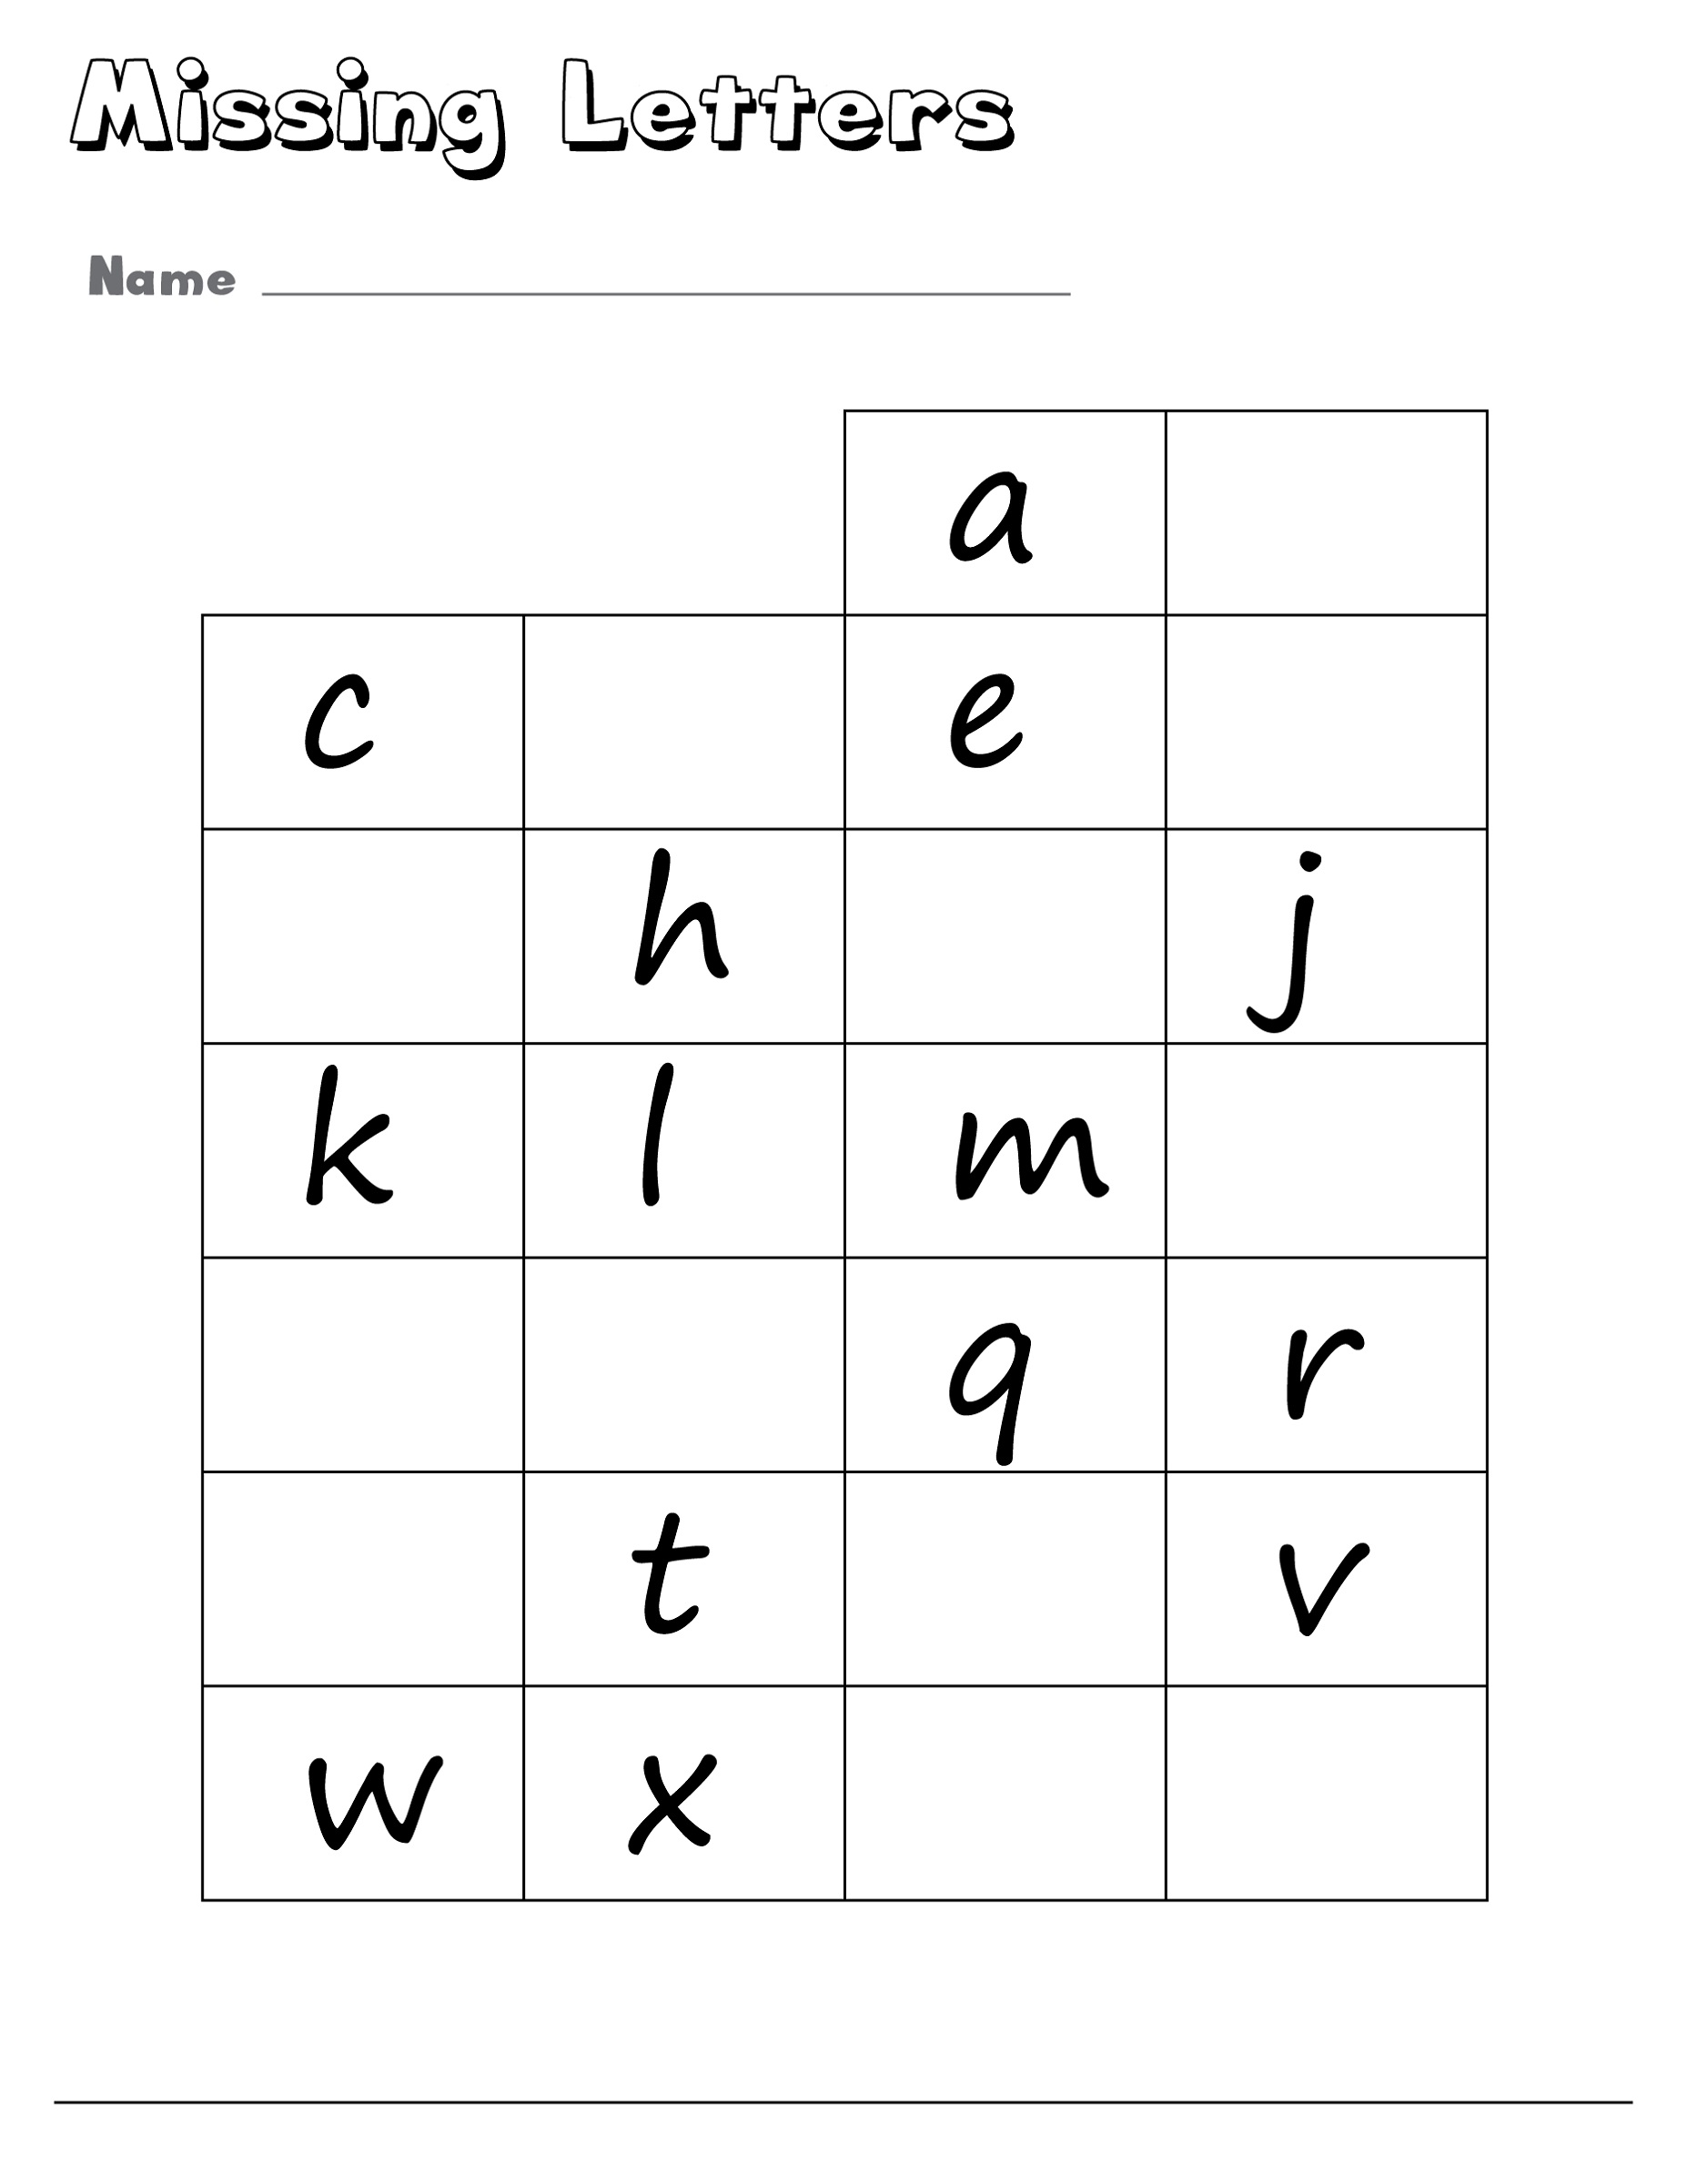 Missing Lower Case Alphabet Worksheets